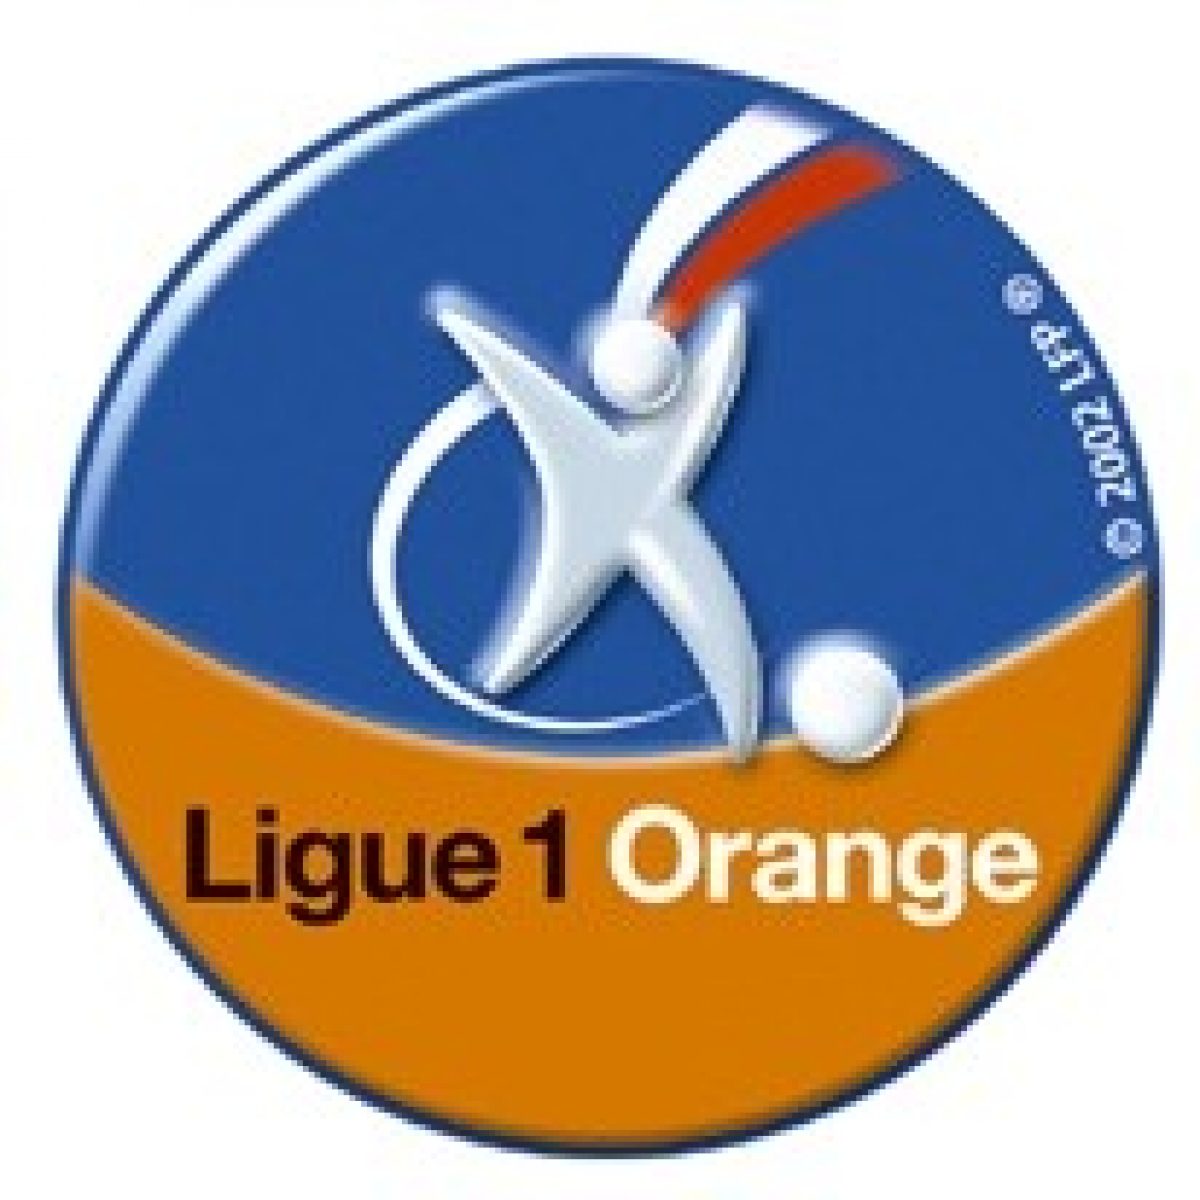 Ligue1: la course aux droits télévisés est lancée!